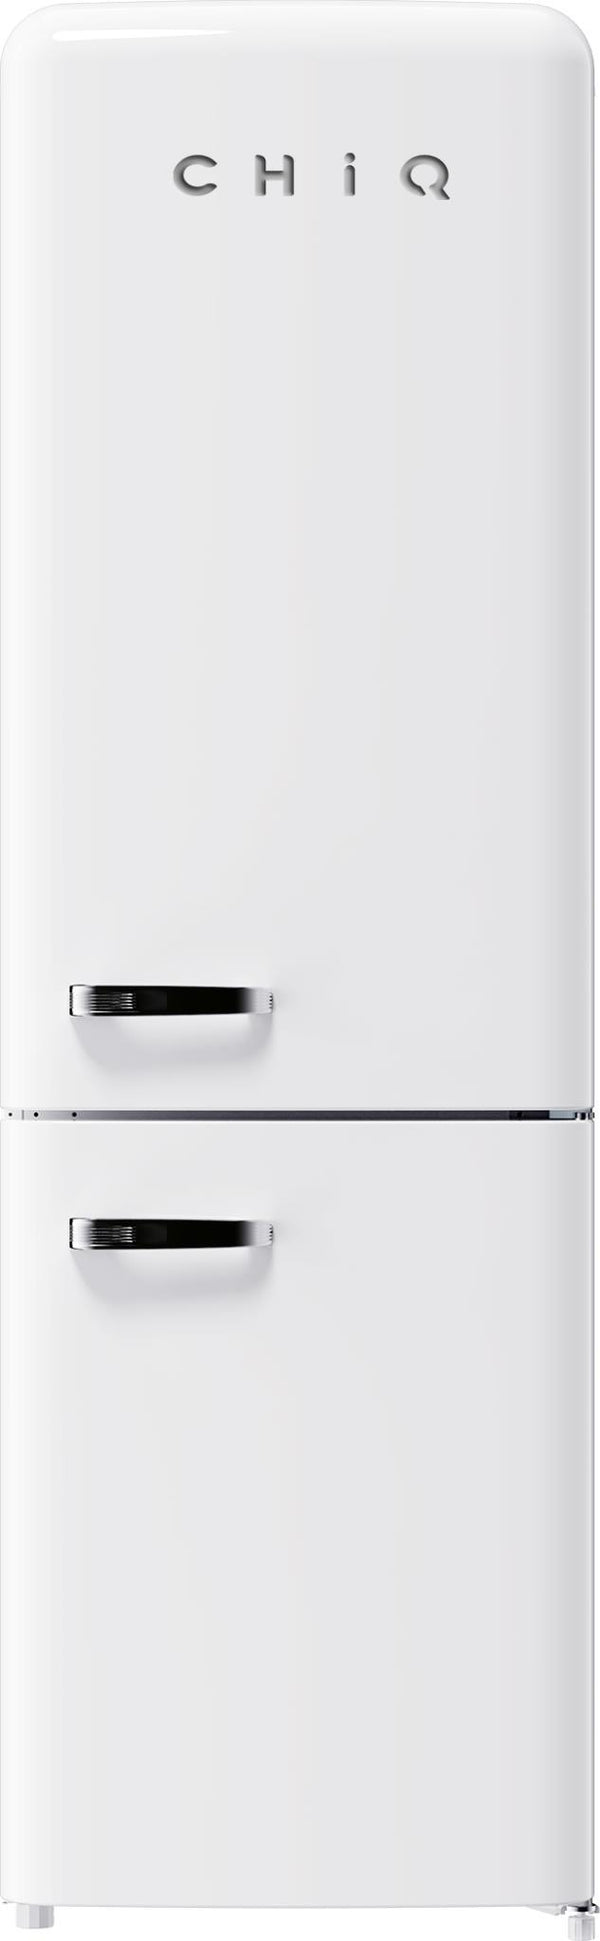  Chiq 231l retro style bottom mount fridge (white)